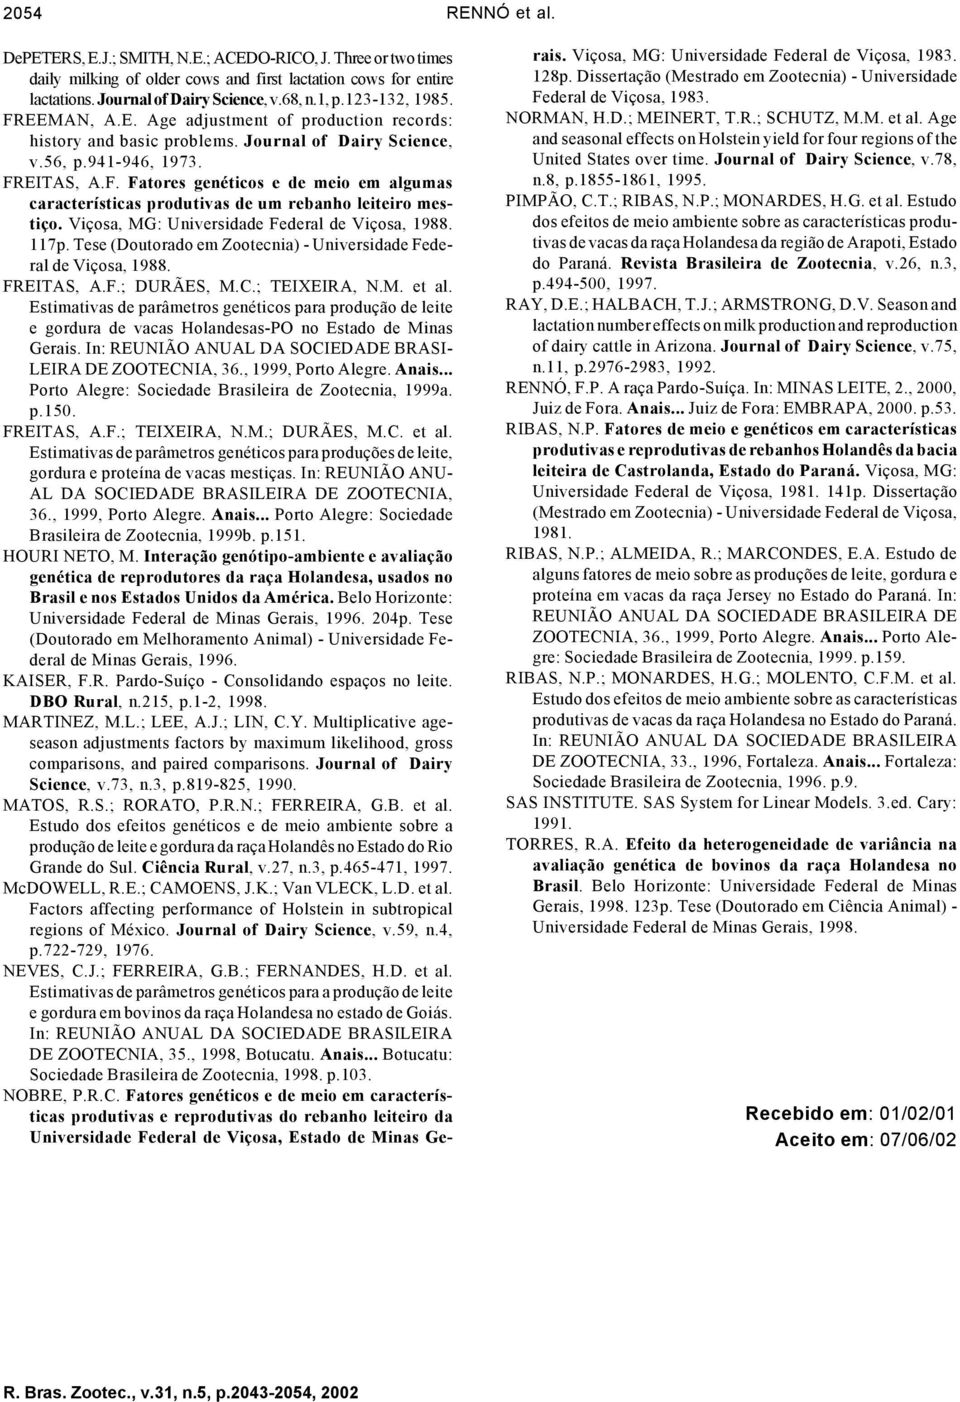 Viçosa, MG: Universidade Federal de Viçosa, 1988. 117p. Tese (Doutorado em Zootecnia) - Universidade Federal de Viçosa, 1988. FREITAS, A.F.; DURÃES, M.C.; TEIXEIRA, N.M. et al.